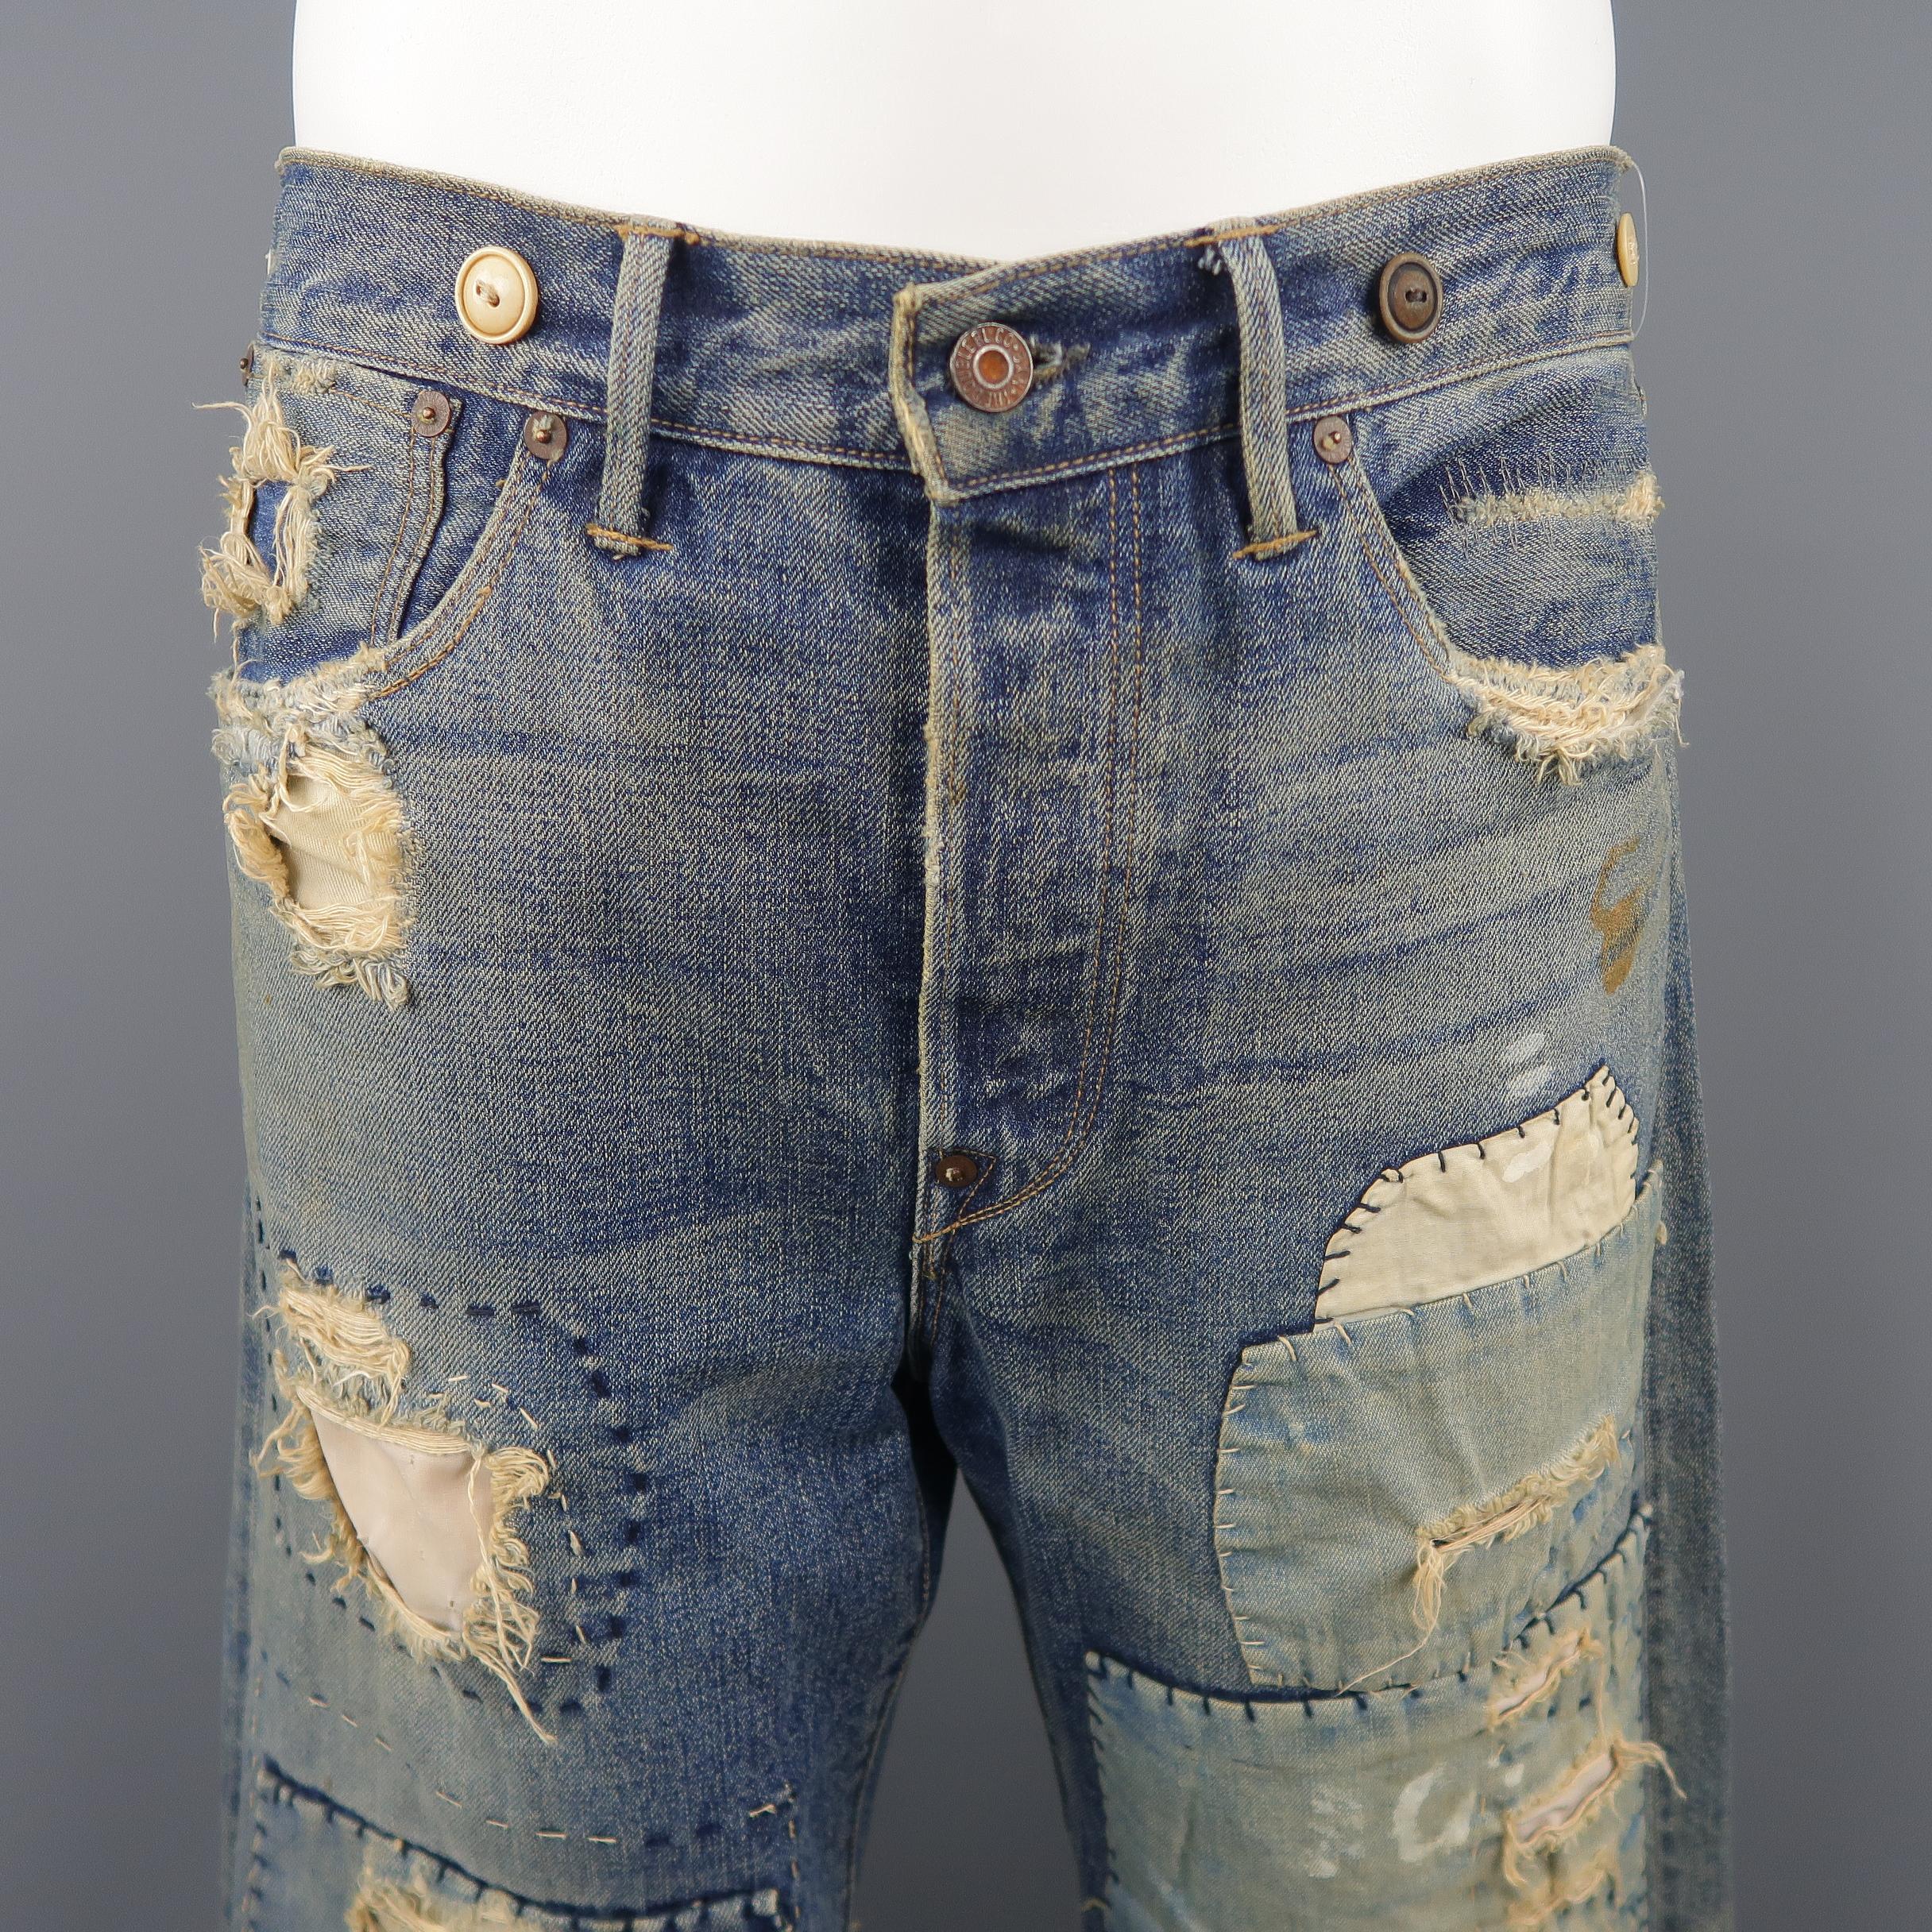 RRL by RALPH LAUREN Jeans im Vintage-Stil aus indigoblauem Denim mit Knöpfen:: Patchwork-Details:: Knopfleiste und Gürtel hinten. 

Hergestellt in den USA. 
Ausgezeichneter gebrauchter Zustand. 
Markiert: 32 x 34
 
Maße: 
 
Taille:  35 in.